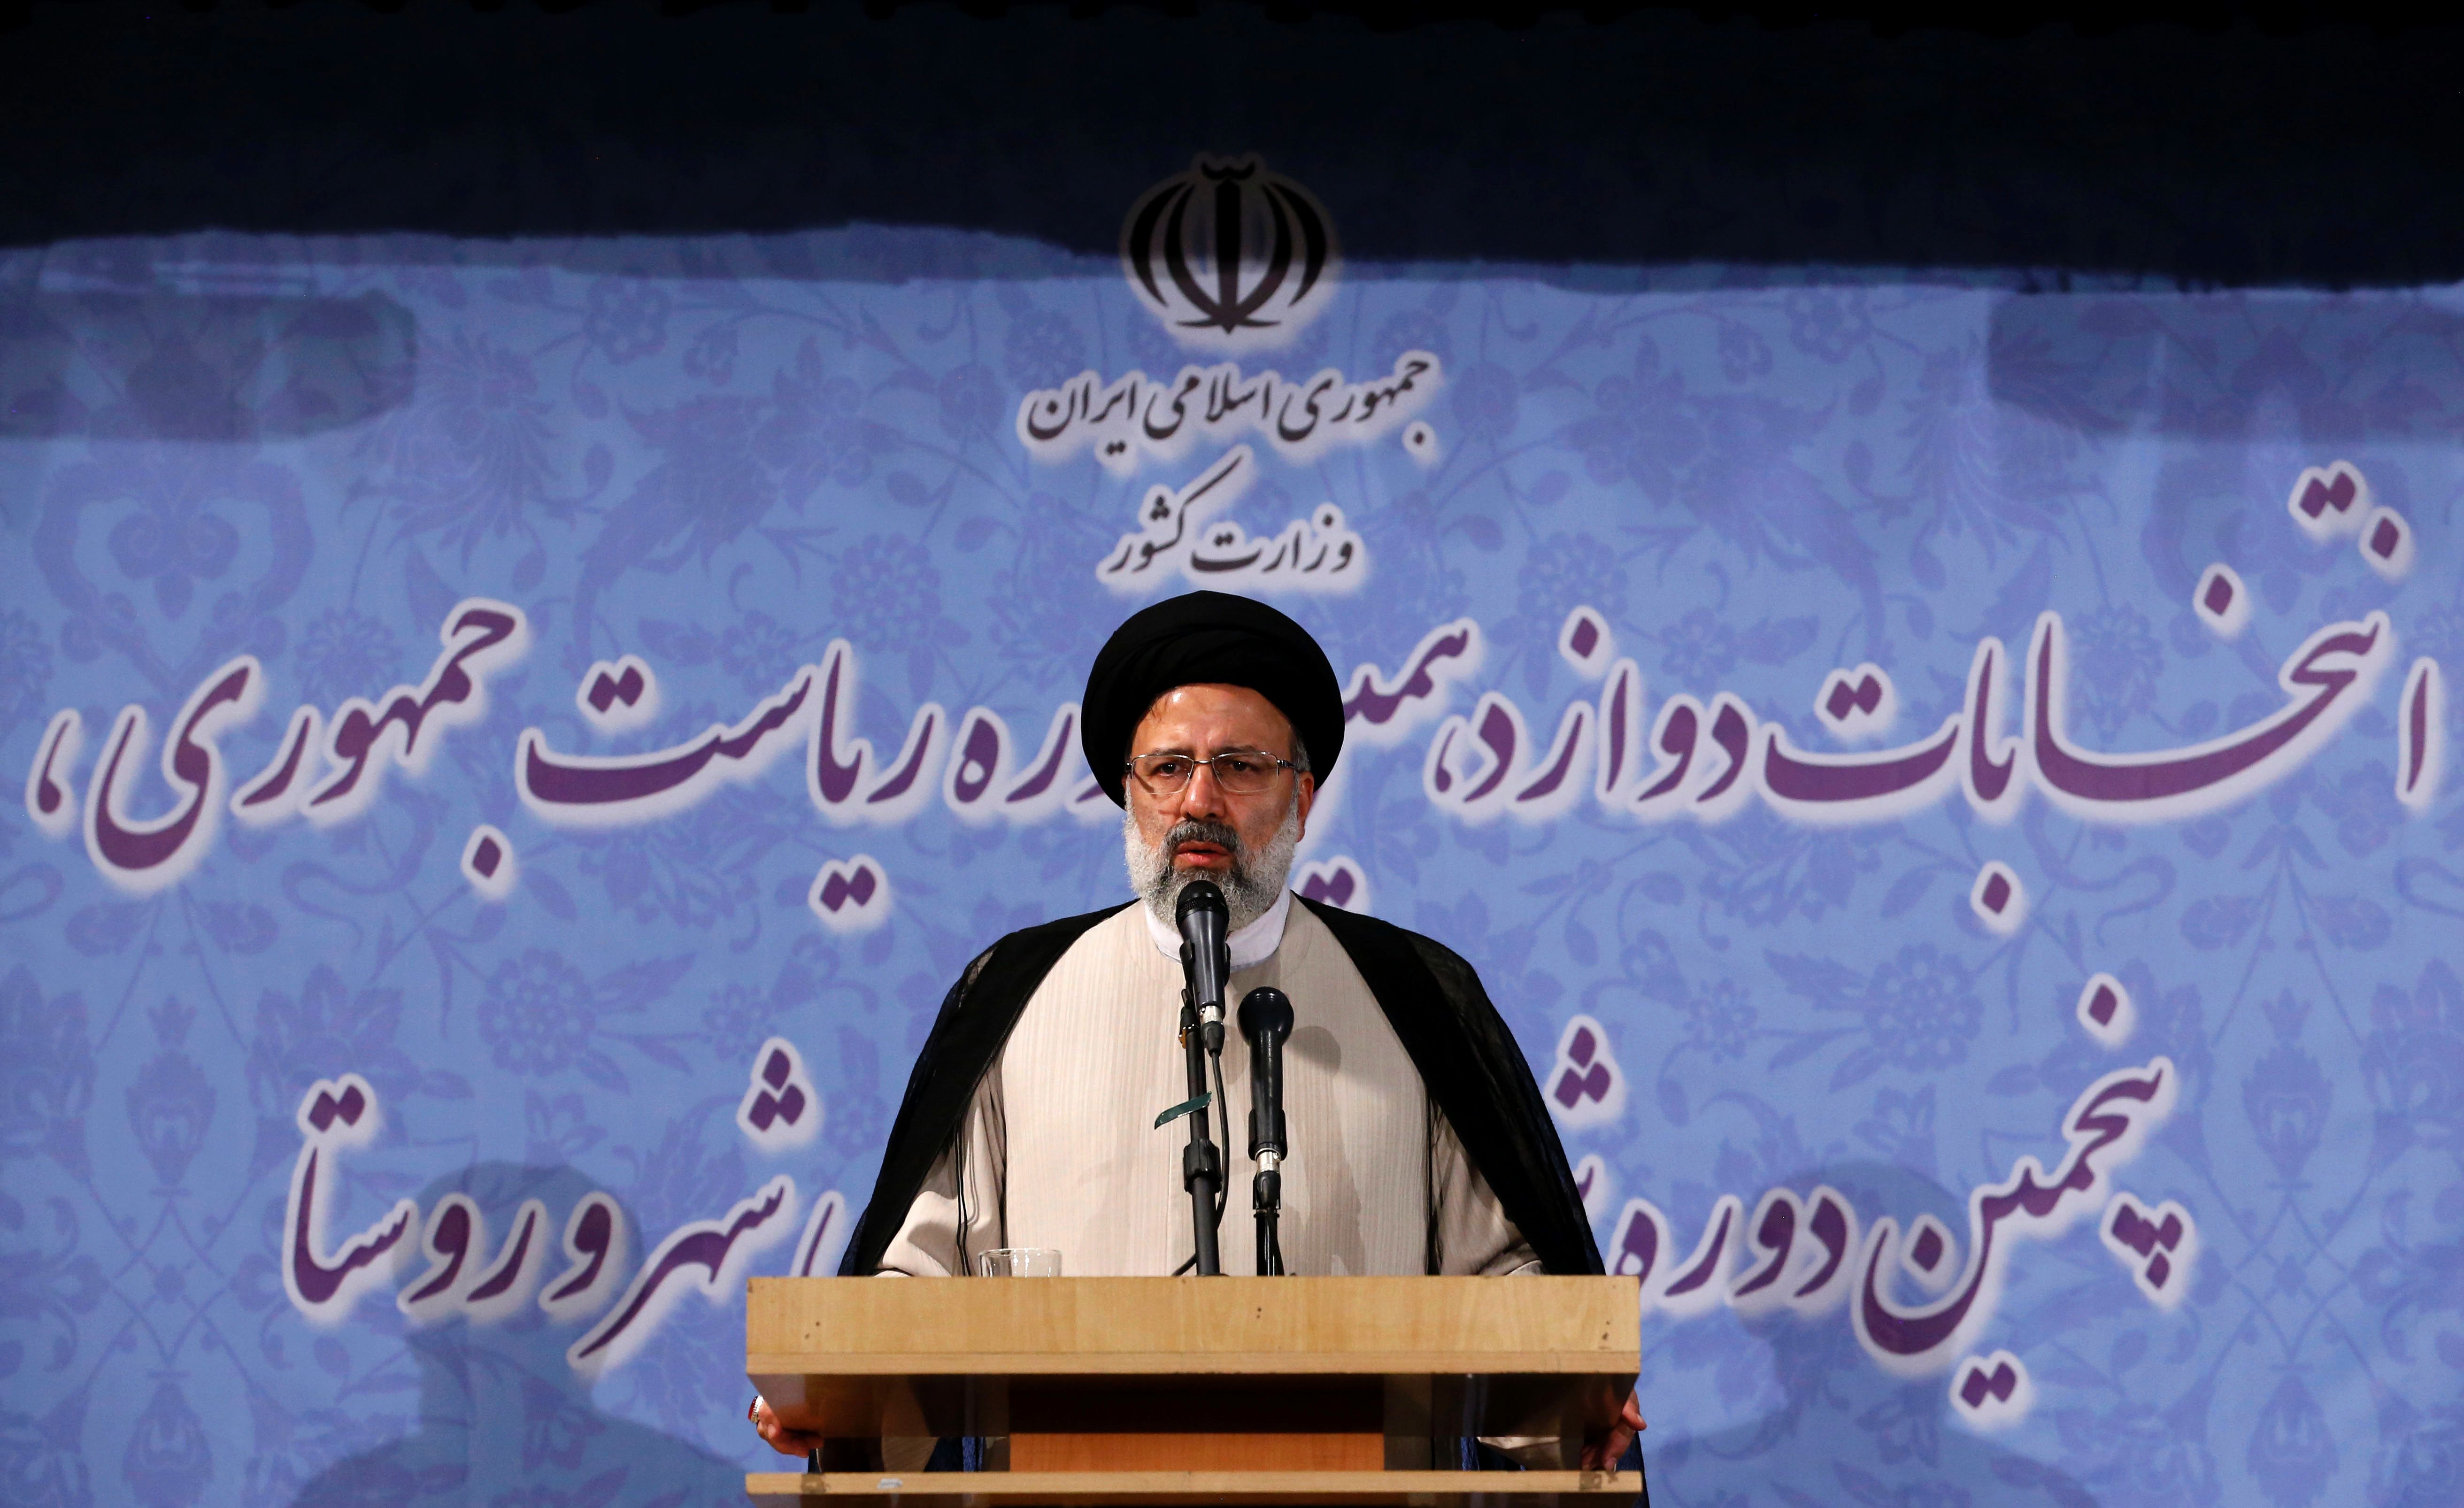 رجل الدين الإيراني ورئيس مؤسسة الإمام رضا الخيرية إبراهيم رايسي